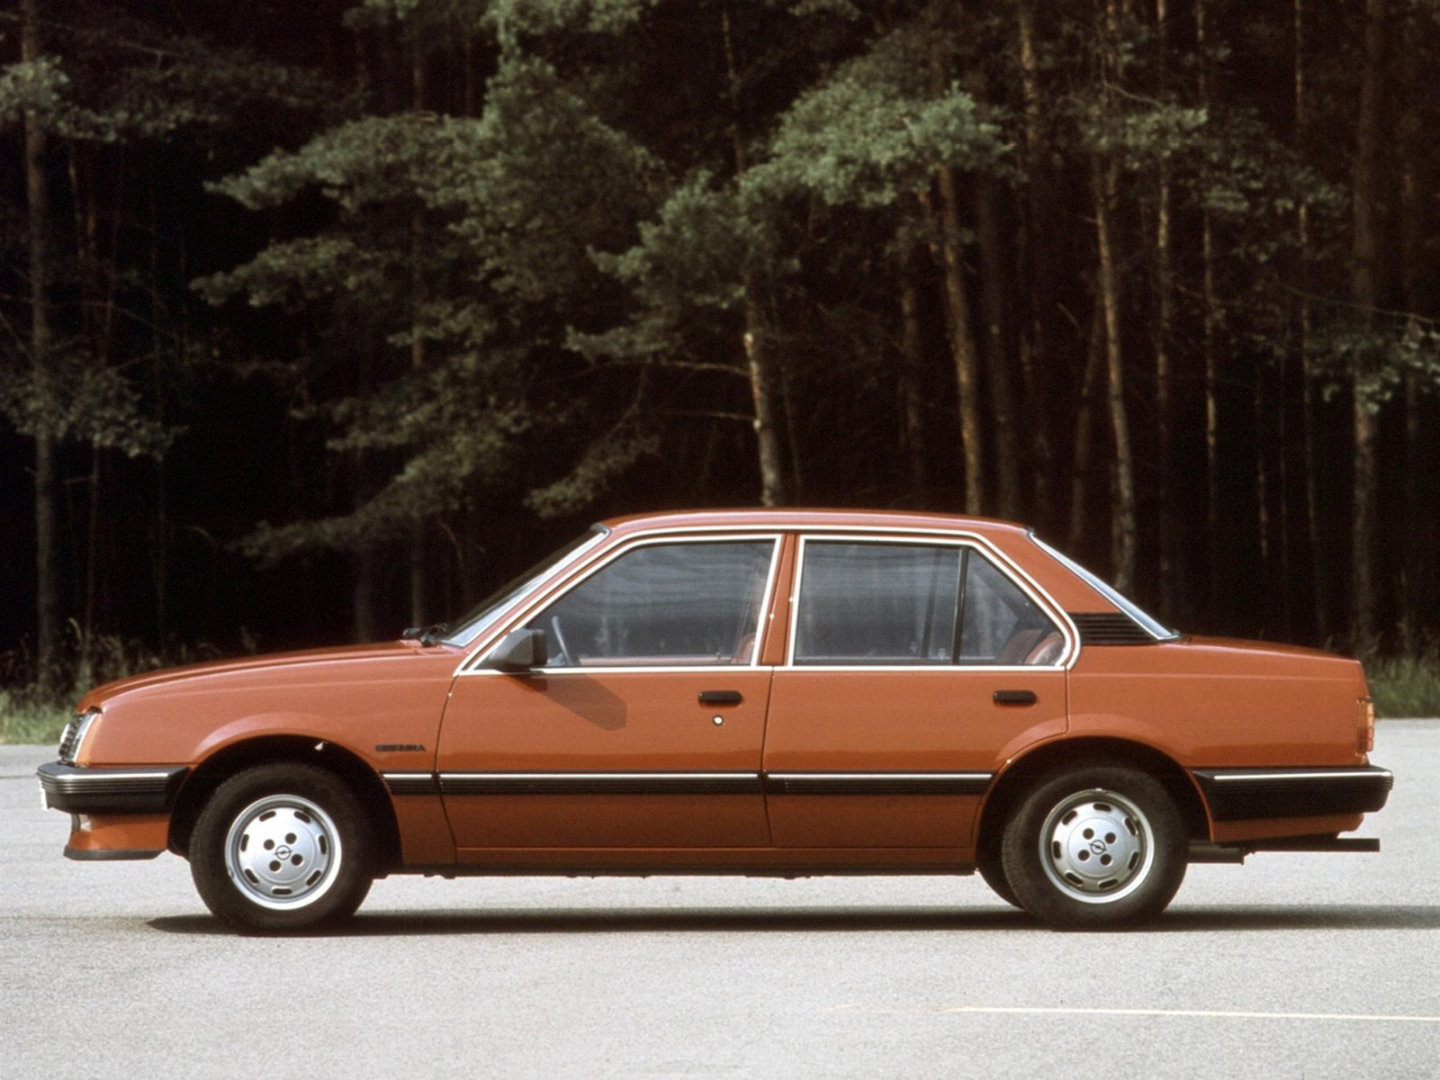 Ð¤Ð¾Ñ‚Ð¾Ð³Ñ€Ð°Ñ„Ð¸Ð¸ Ð°Ð²Ñ‚Ð¾Ð¼Ð¾Ð±Ð¸Ð»ÐµÐ¹ Opel Ascona / ÐžÐ¿ÐµÐ»ÑŒ ÐÑÐºÐ¾Ð½Ð° (1981 - 1984) Ð¡ÐµÐ´Ð°Ð½